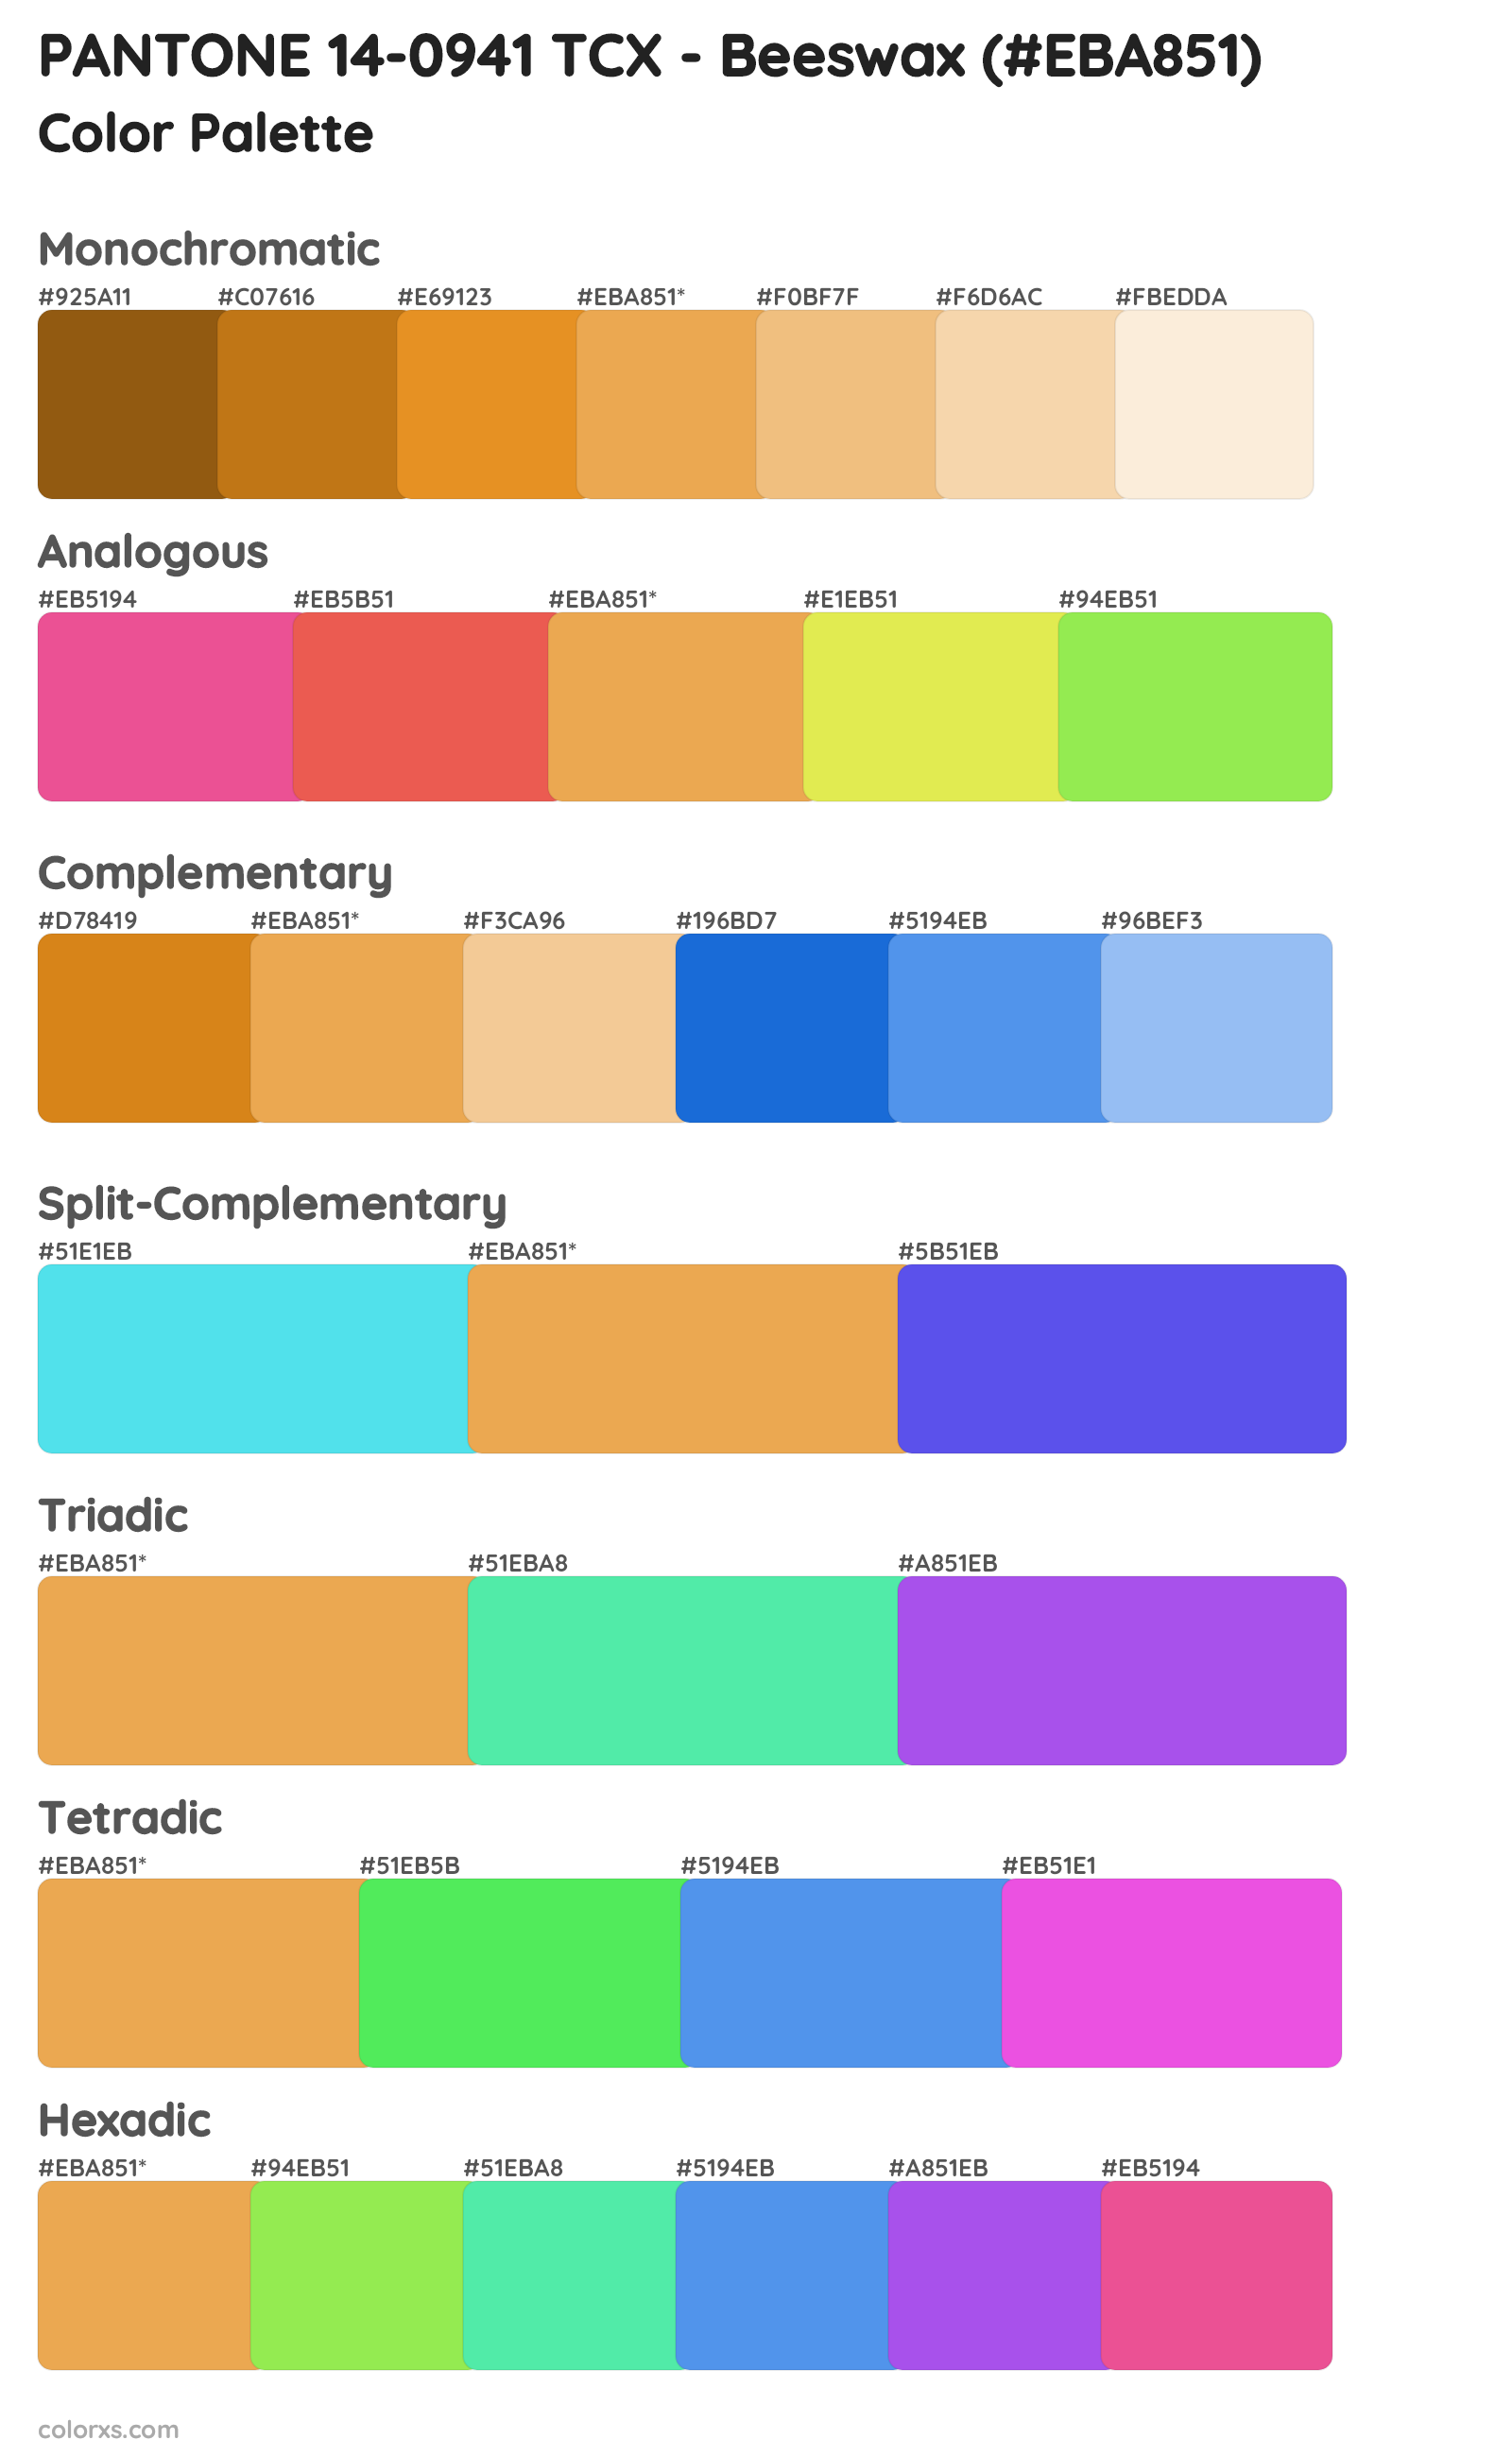 PANTONE 14-0941 TCX - Beeswax Color Scheme Palettes